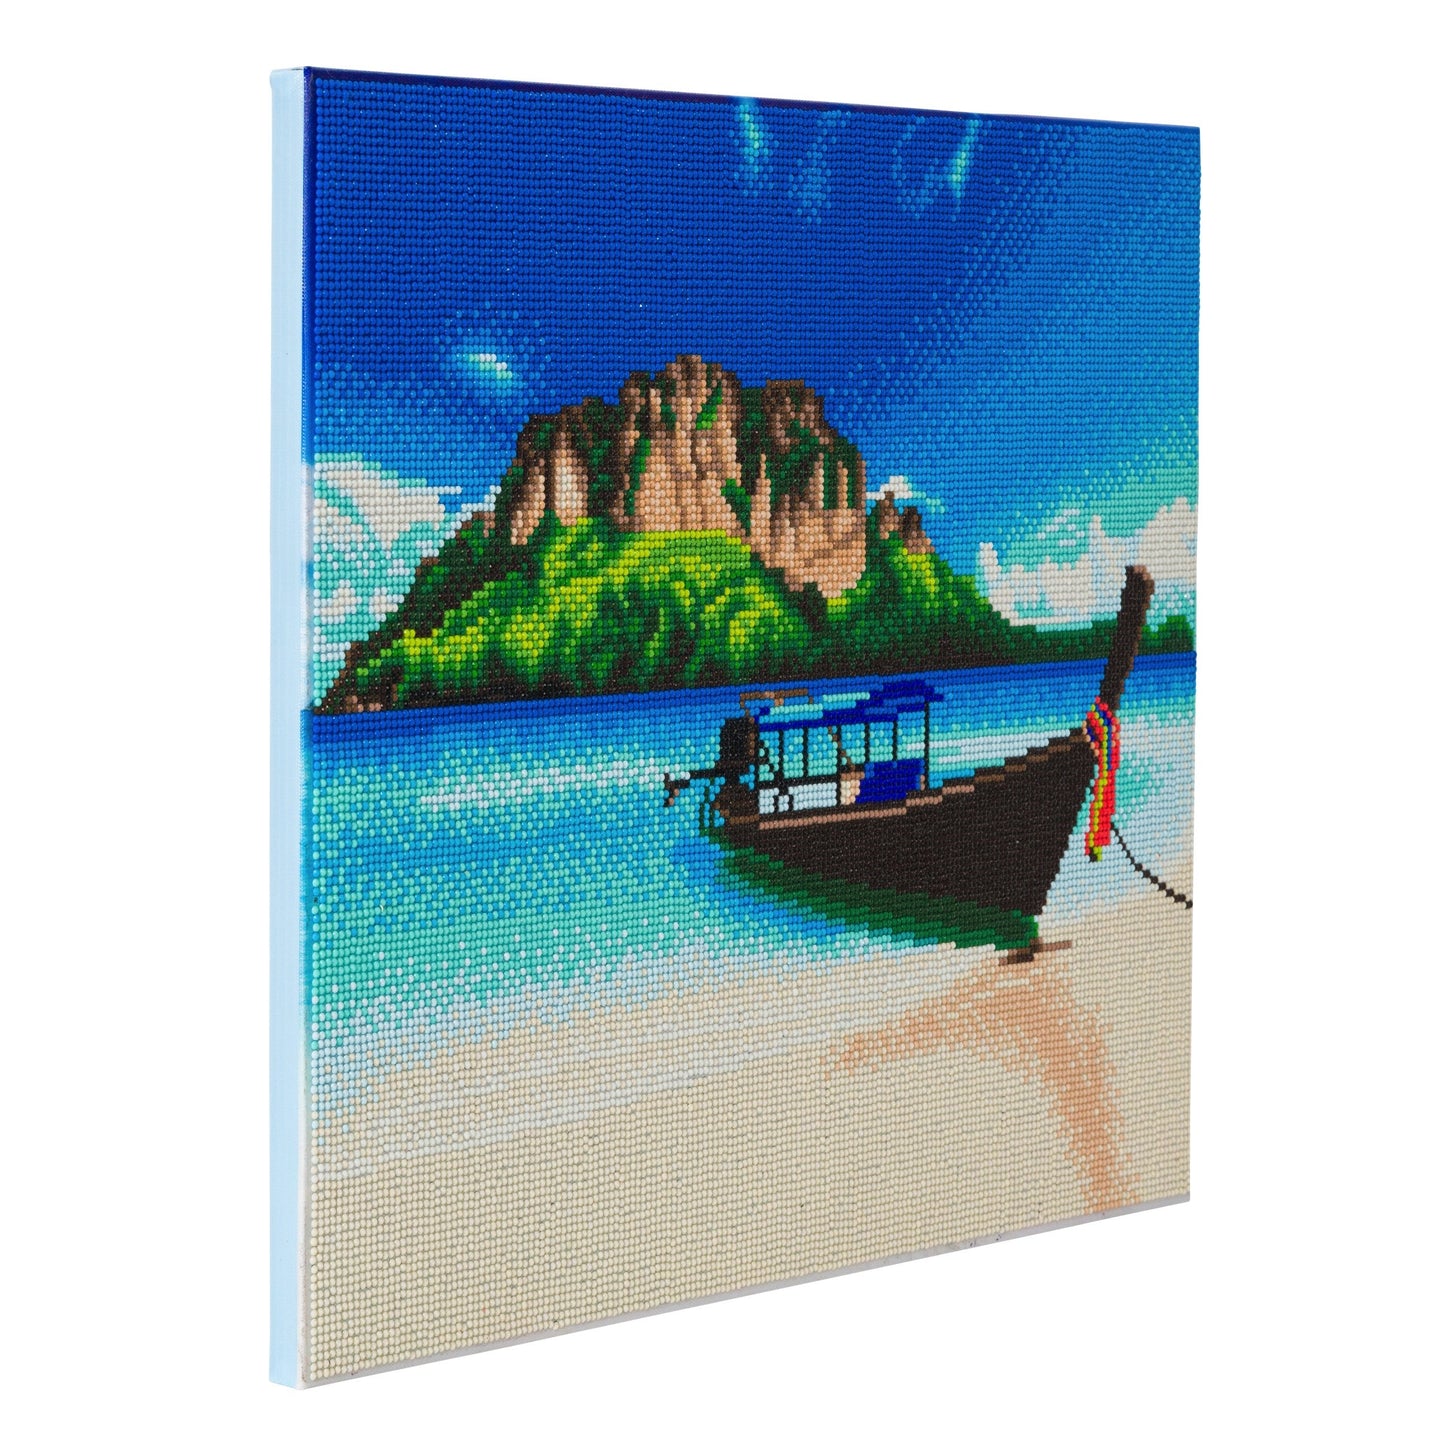 CAK-A95: Tropical Beach Boat Framed Crystal Art Kit, 40 x 50cm